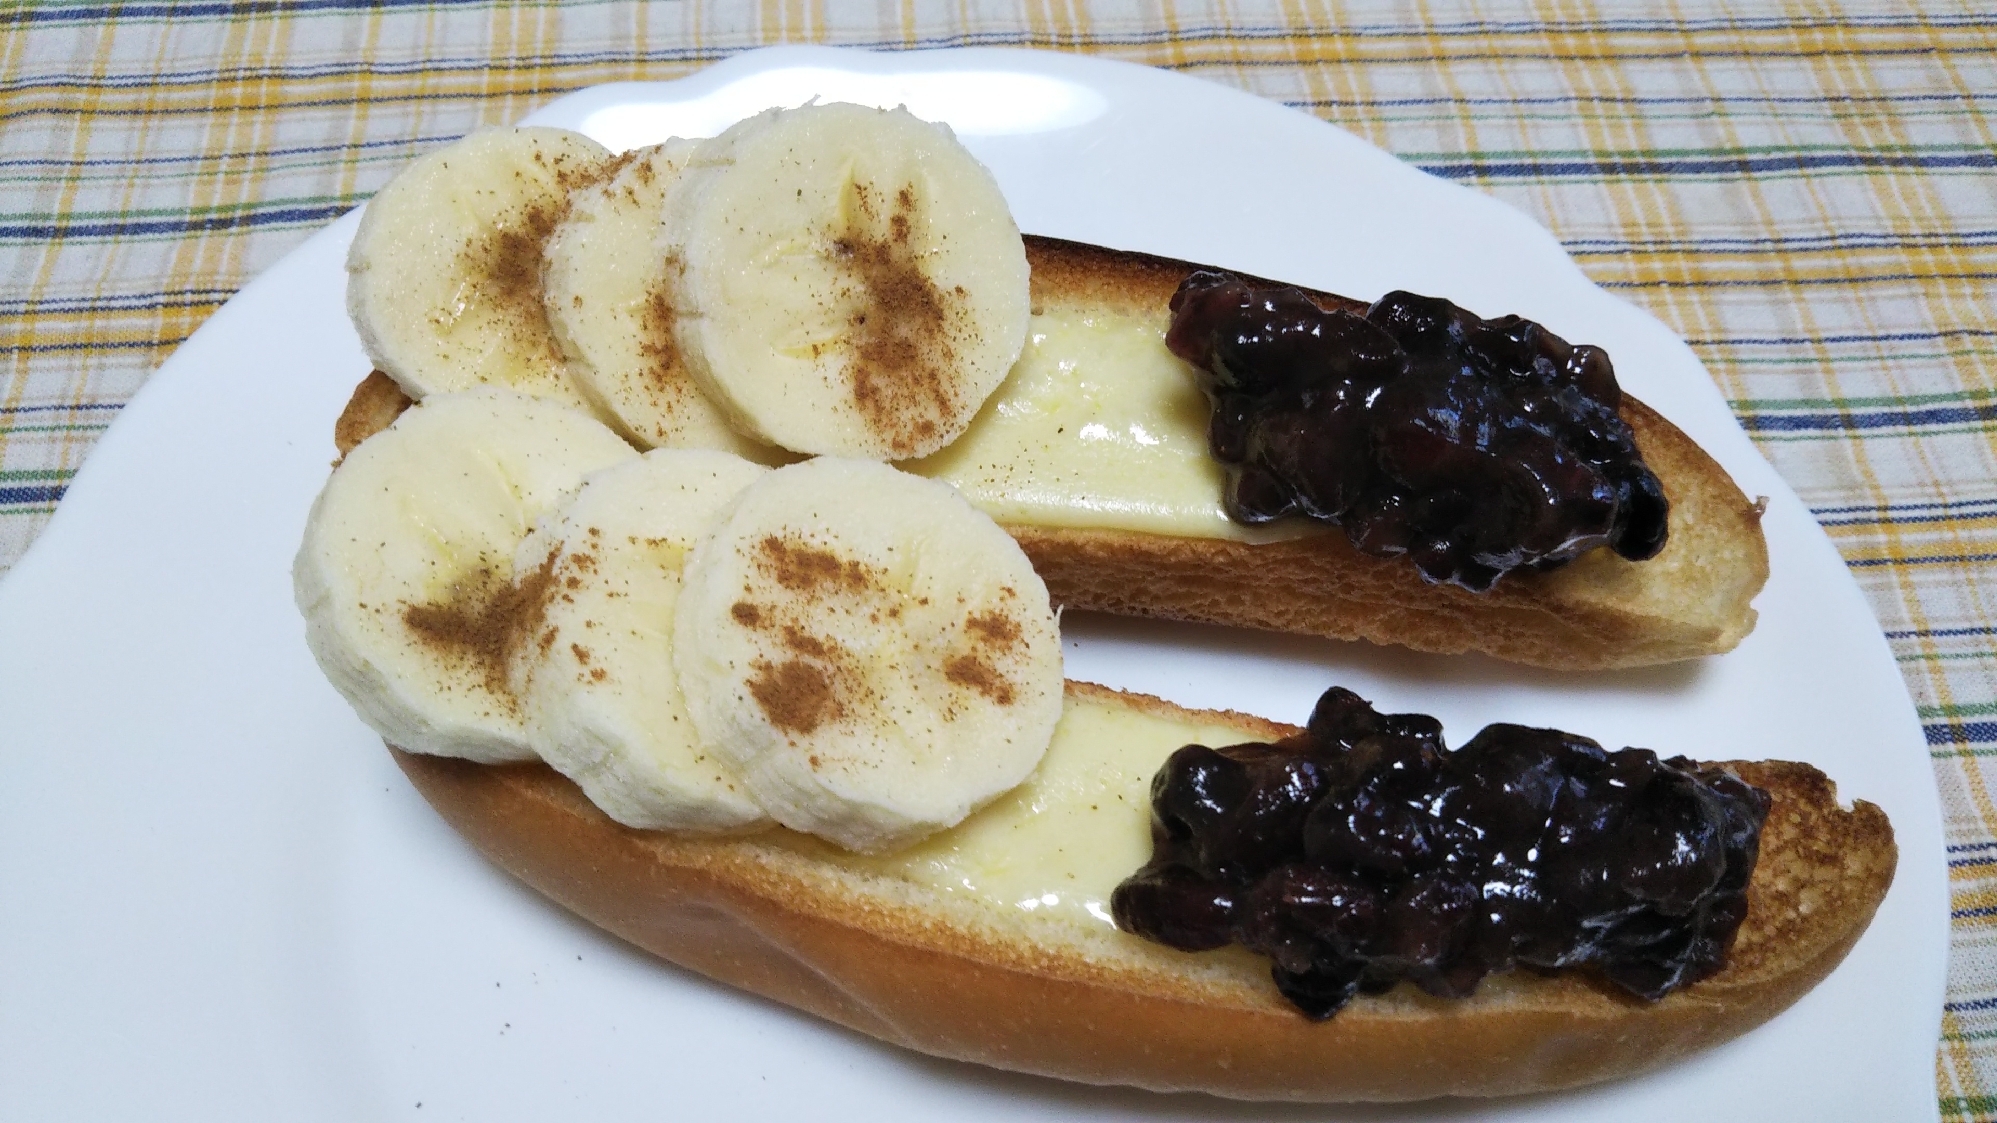 バナナと茹で小豆のチーズトーストシナモンかけ☆